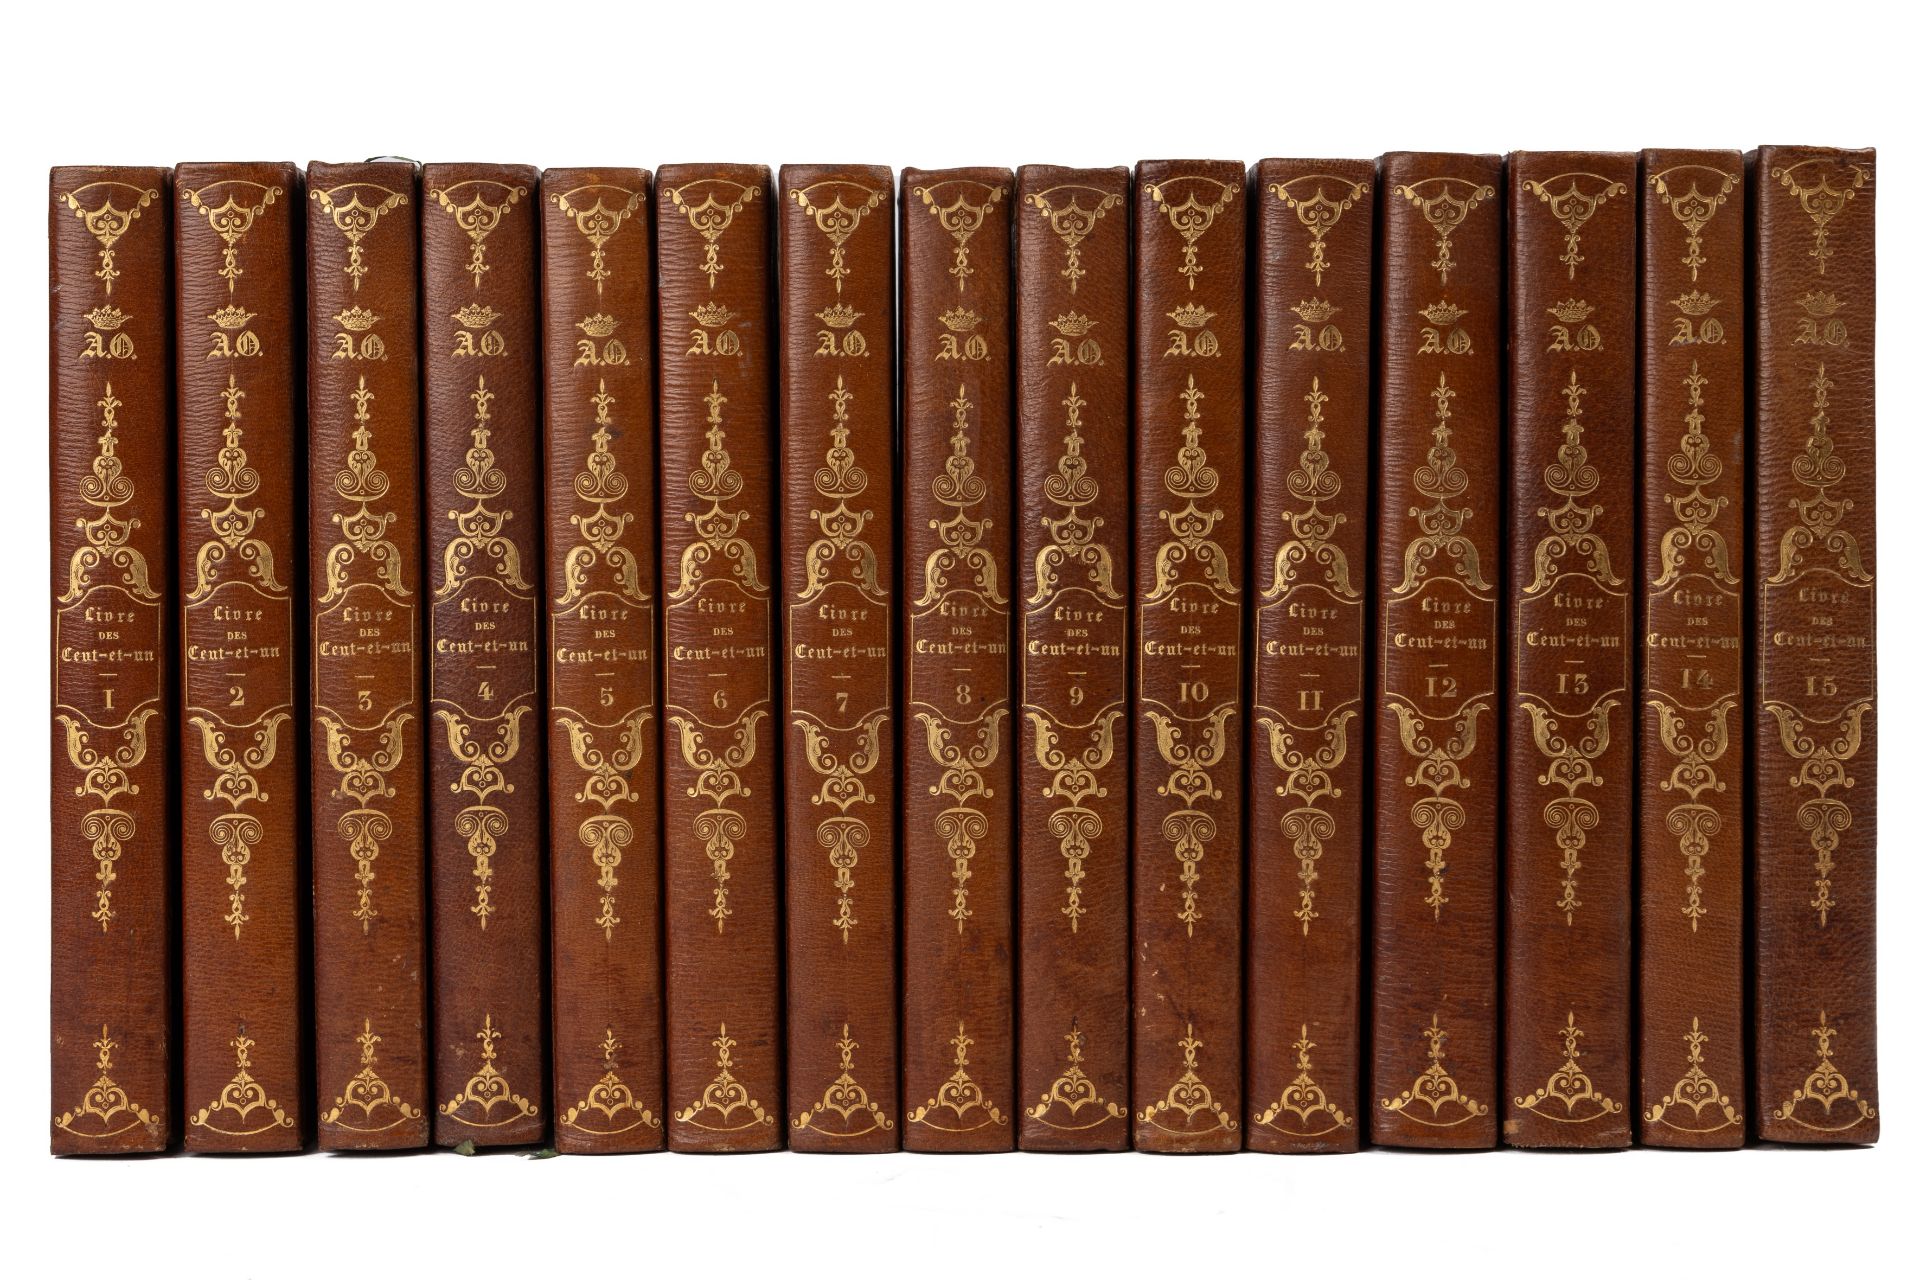 Paris, ou le Livre des Cent-et-un. 15 vols. 4to. Ladvocat, Paris 1831-34. Half gilt tooled calf